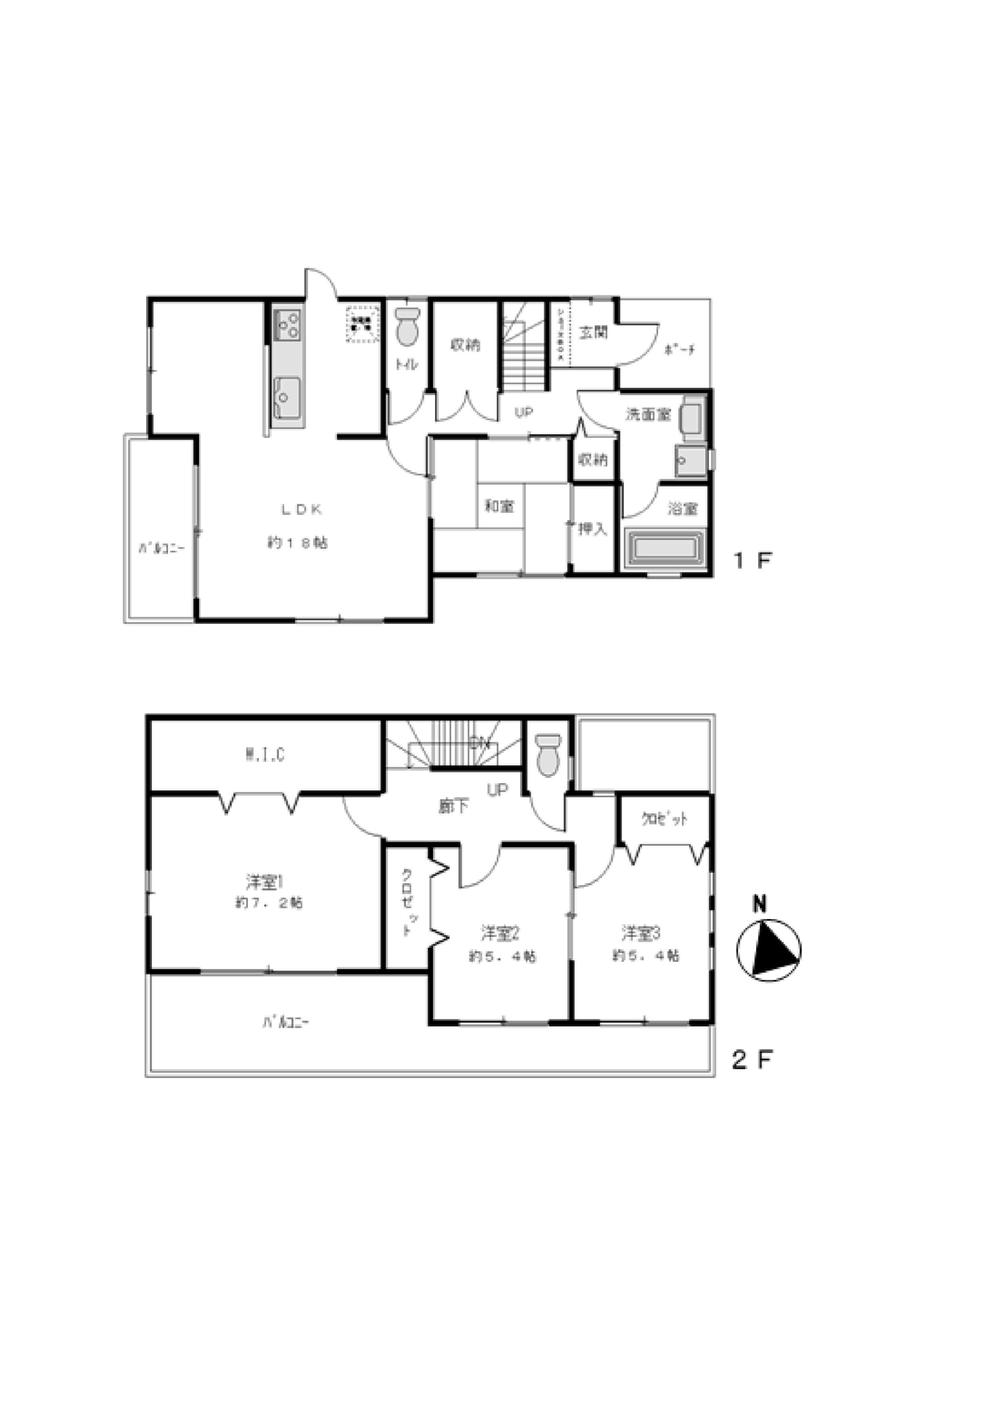 Floor plan. 36,800,000 yen, 4LDK, Land area 192.87 sq m , Building area 104.54 sq m image Floor